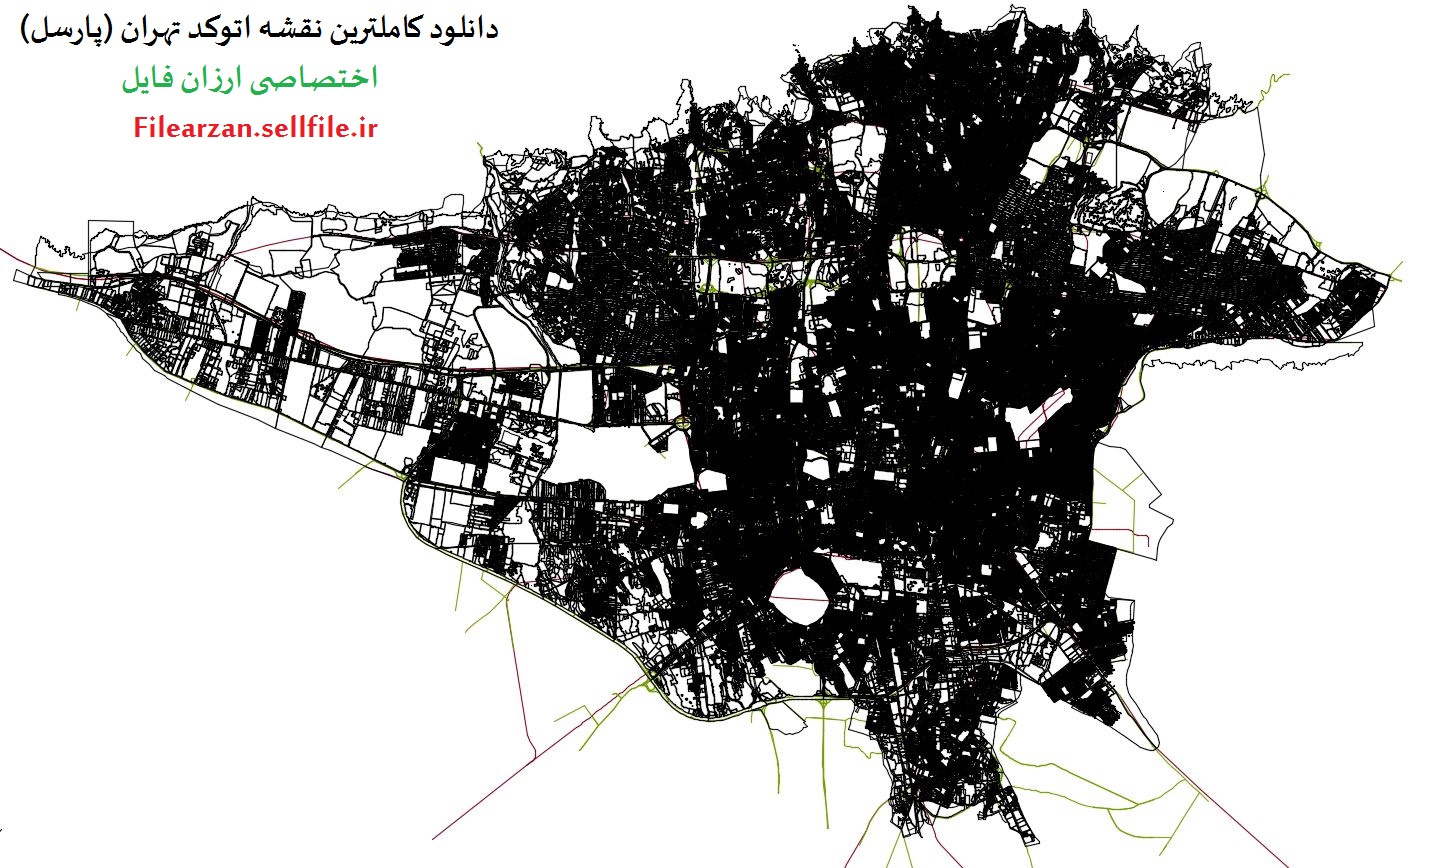 دانلود کاملترین نقشه اتوکد تهران